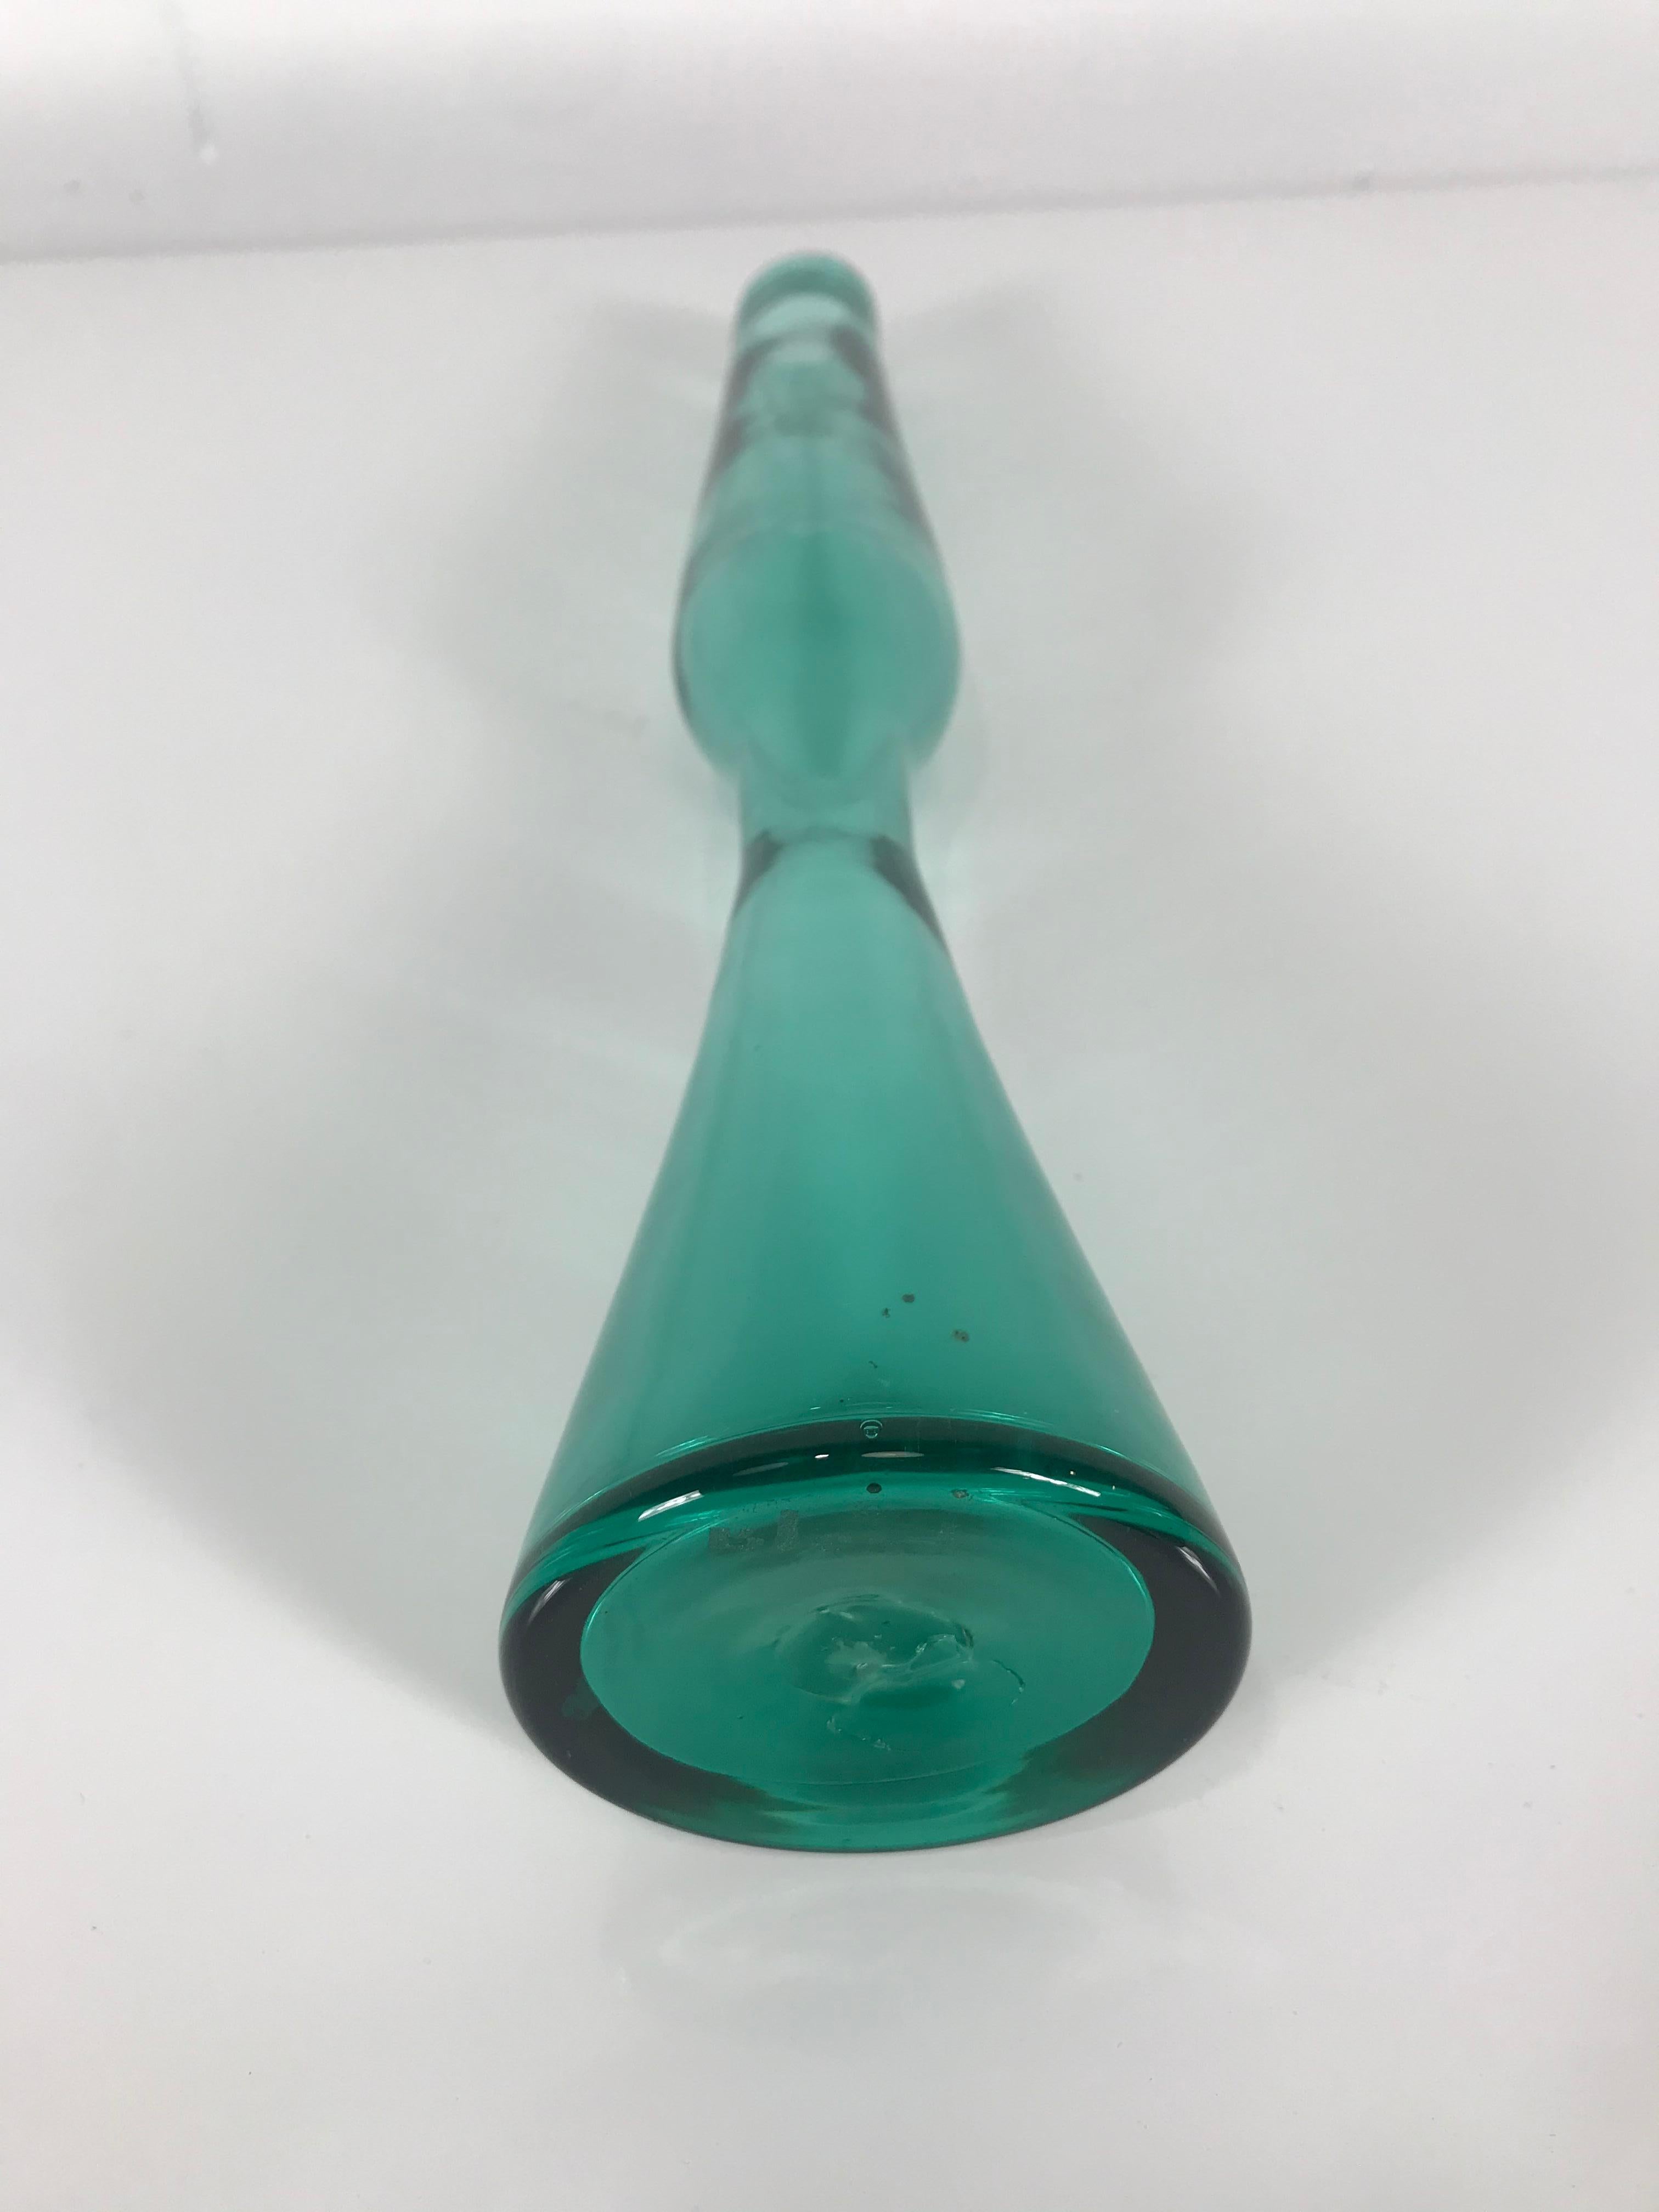 Dies ist die größere der seltenen Vase Nummer 6024:: auch bekannt als die Rocket-Vase:: entworfen von Wayne Husted in der schönen teal-grünen Farbe:: die Blenko 